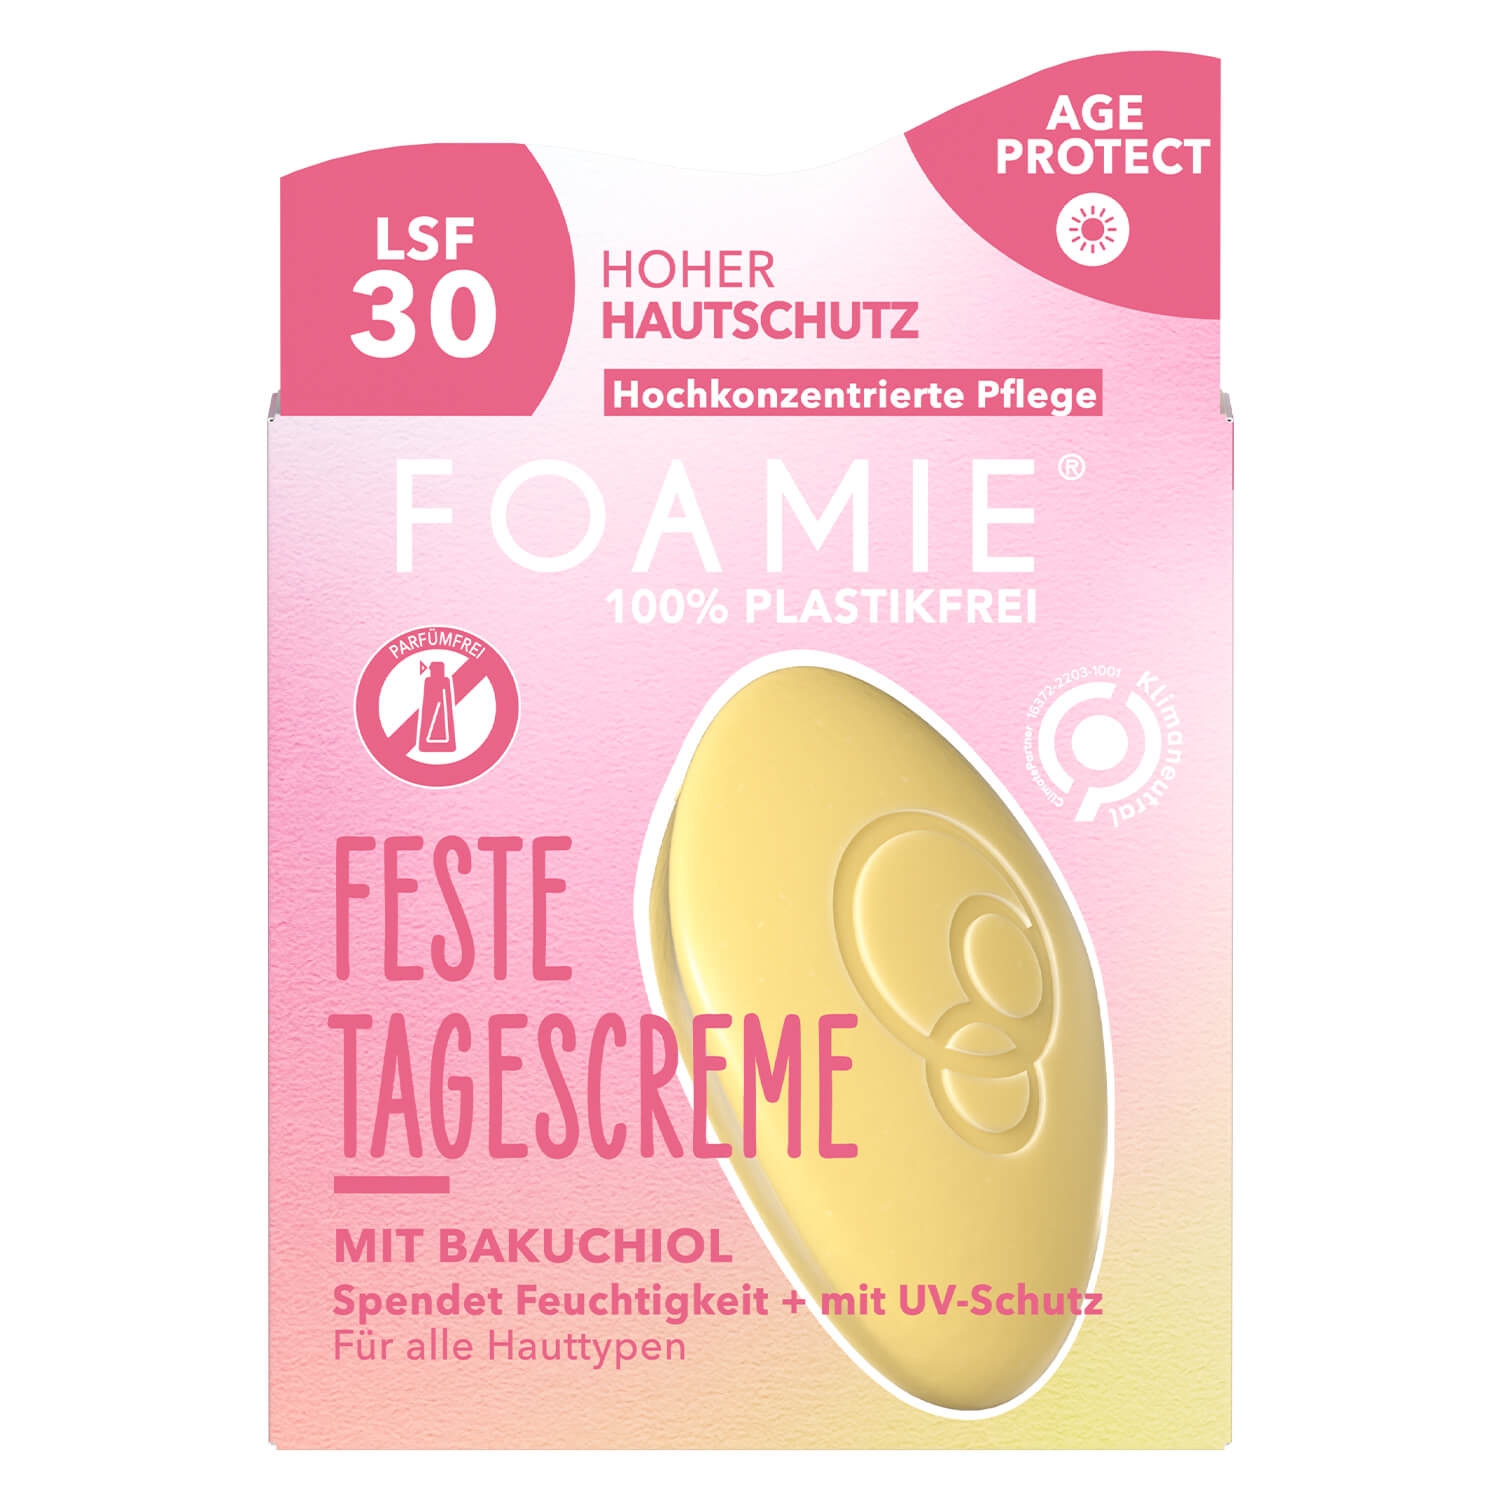 Image du produit de Foamie - Feste Tagescreme Ages Protect